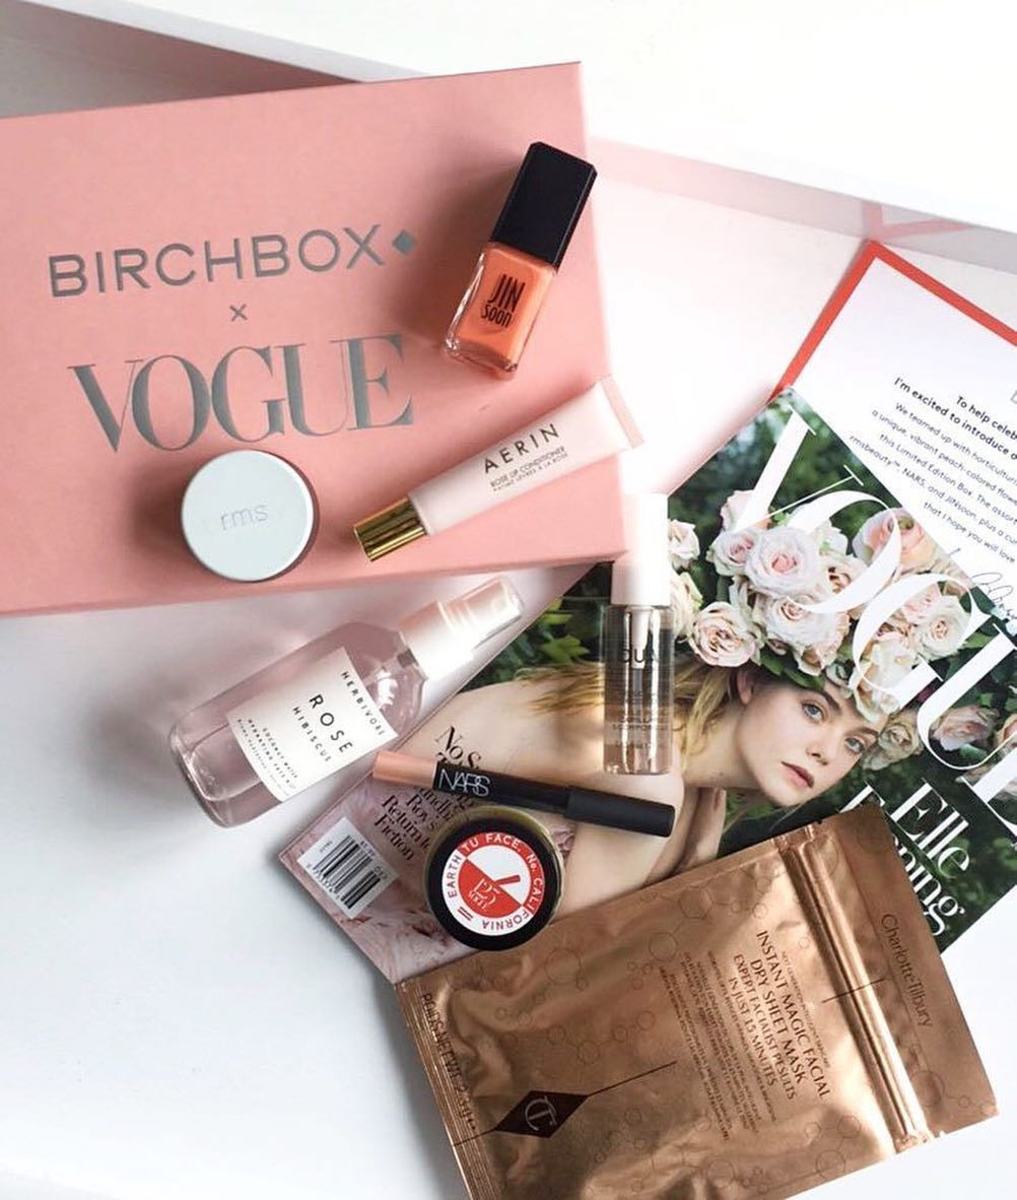 The Birchbox x Vogue box. Photo: @birchbox/Instagram